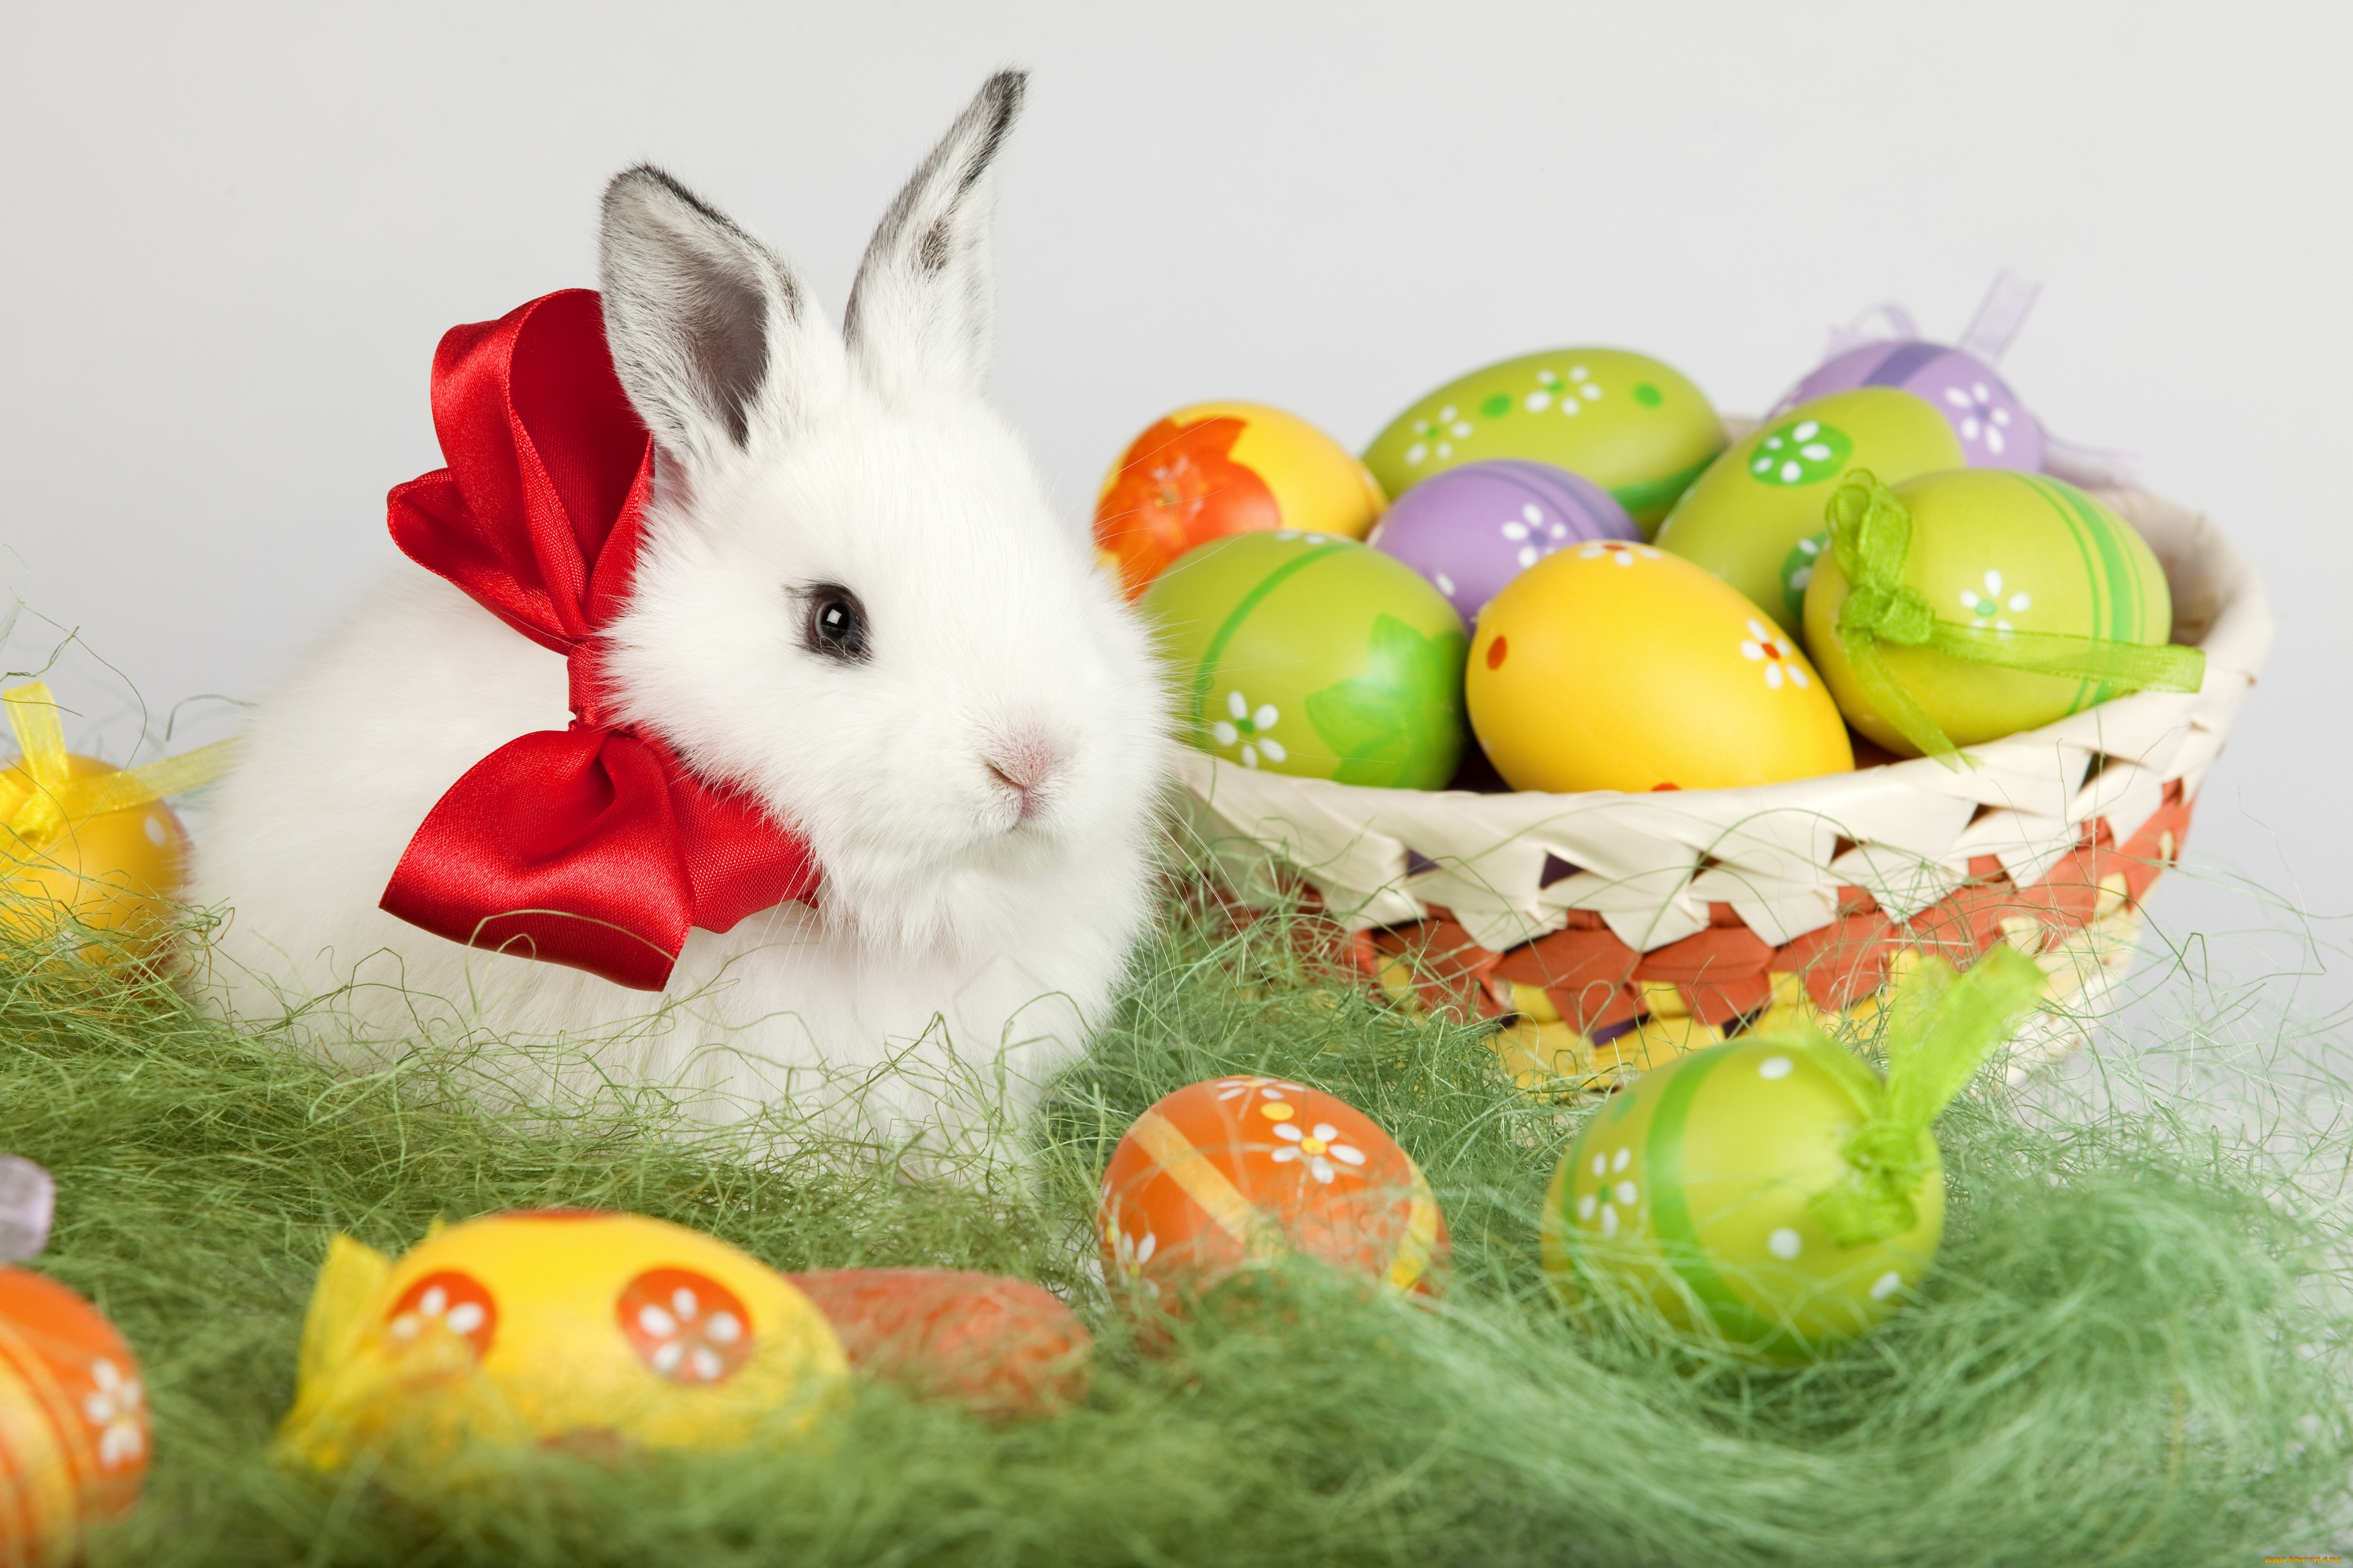 Праздник пасхи , со светлым праздником пасхи , открытки с зайчиком. Празник пасхи , светлый праздник пасхи , картинки , открытки с изображением на открытке зайчика , кролик , пасхальные , разноцветные яйца , яркие цвета , с пасхой.